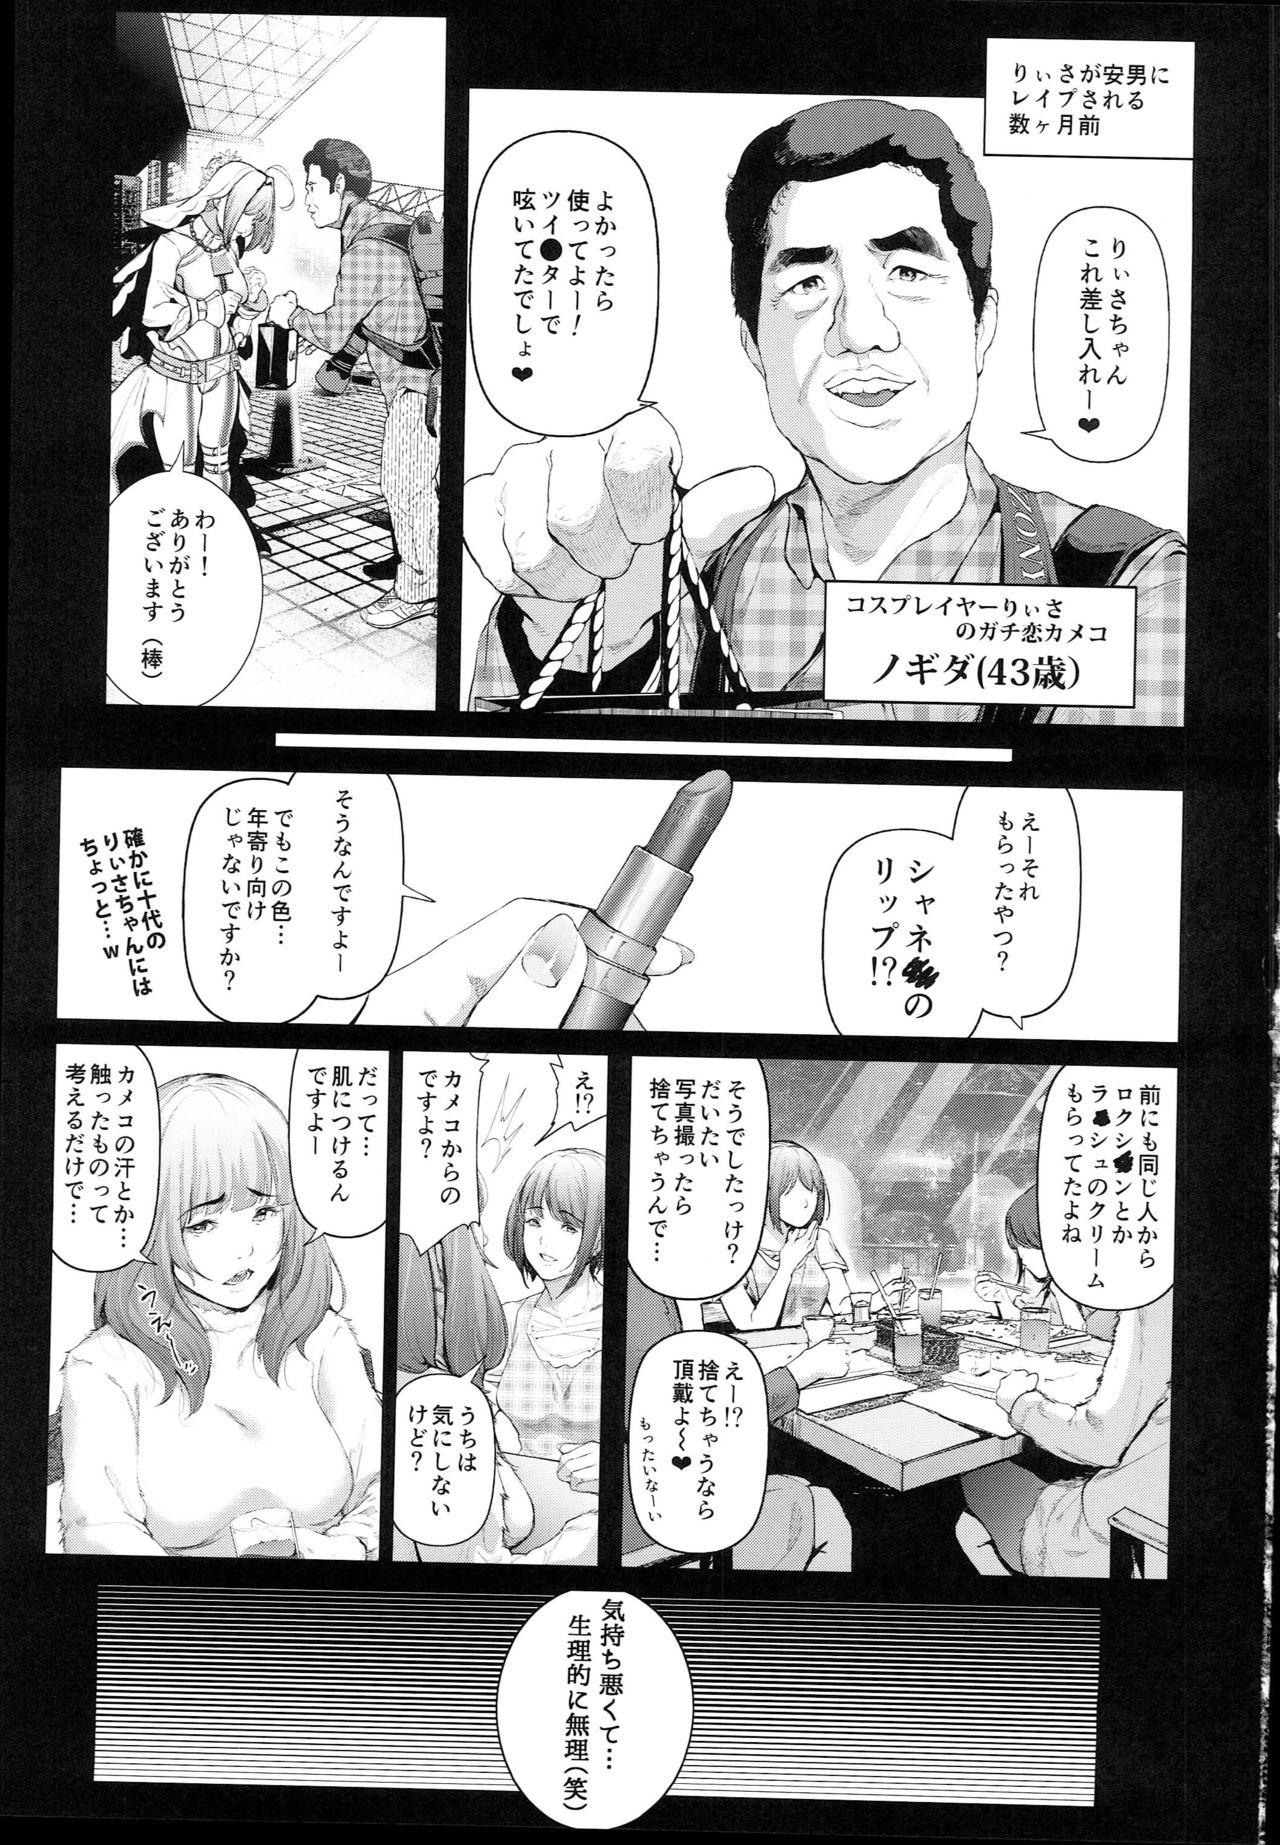 Cos wa Midara na Kamen - Ninki Cosplayer Nakayoshi Group Kinikuwanai FGO Cos Namaiki Layer o Rape Satsuei Hen 2